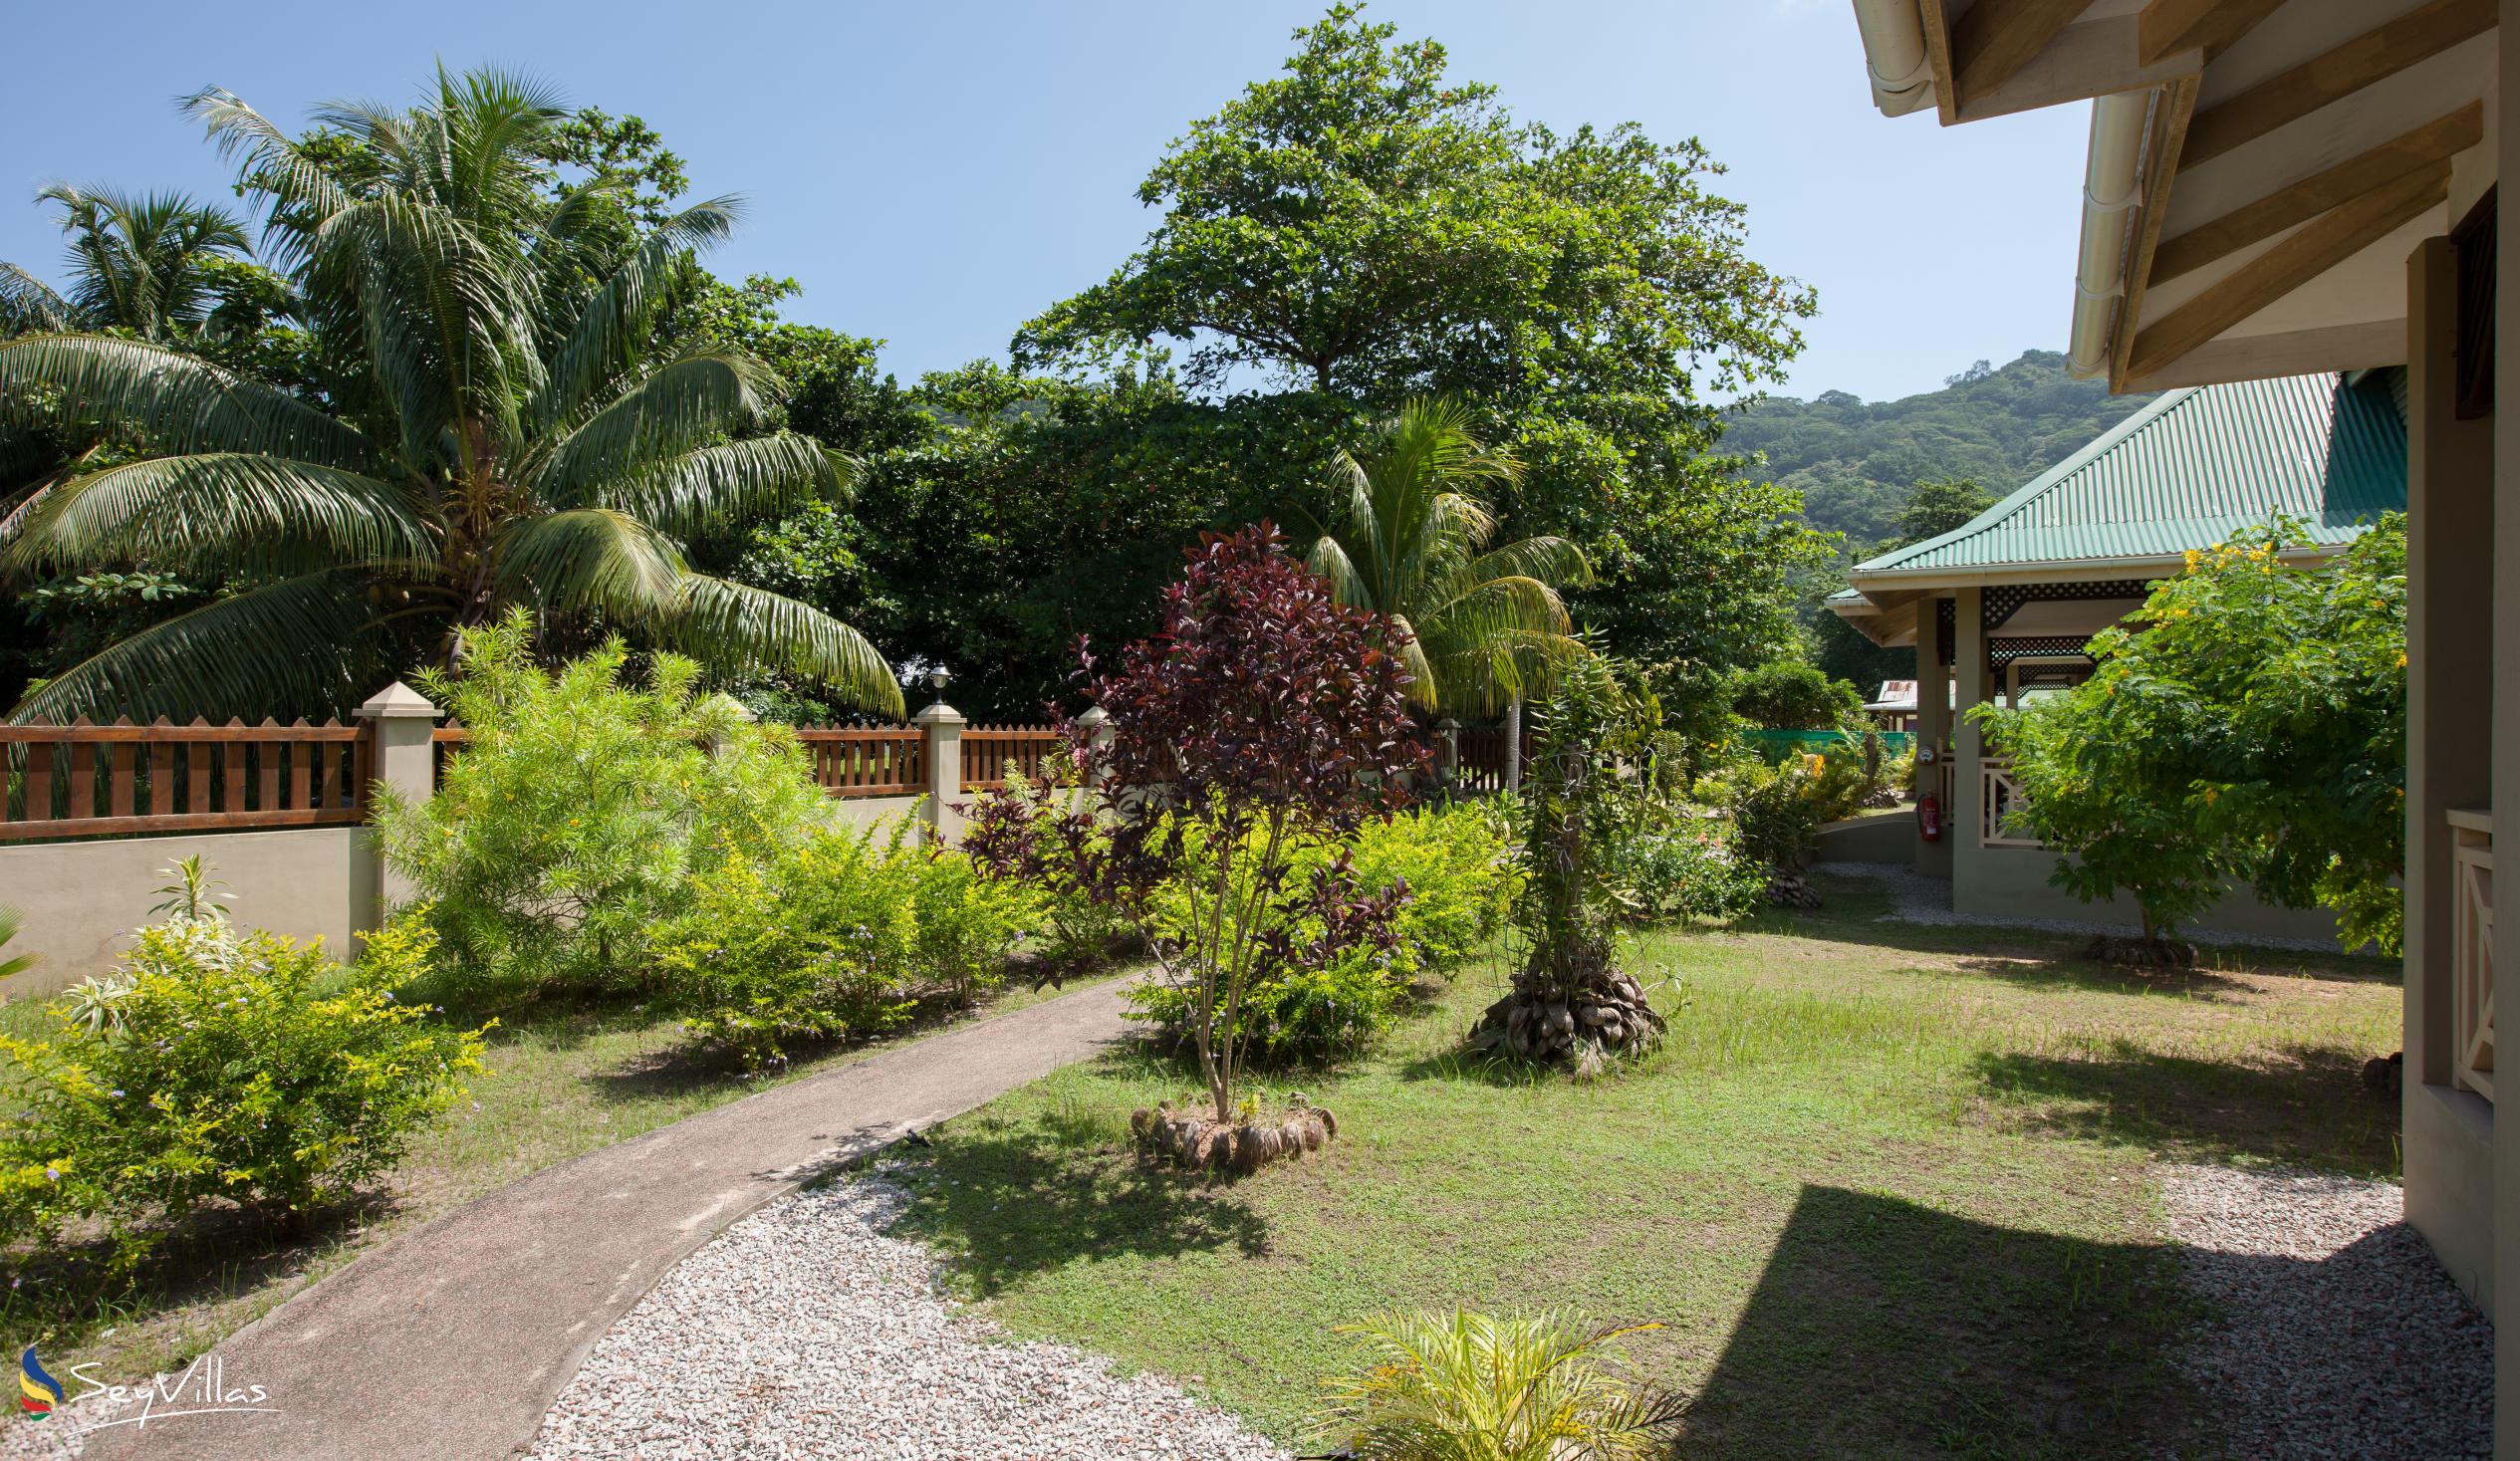 Photo 93: Hostellerie La Digue - Outdoor area - La Digue (Seychelles)